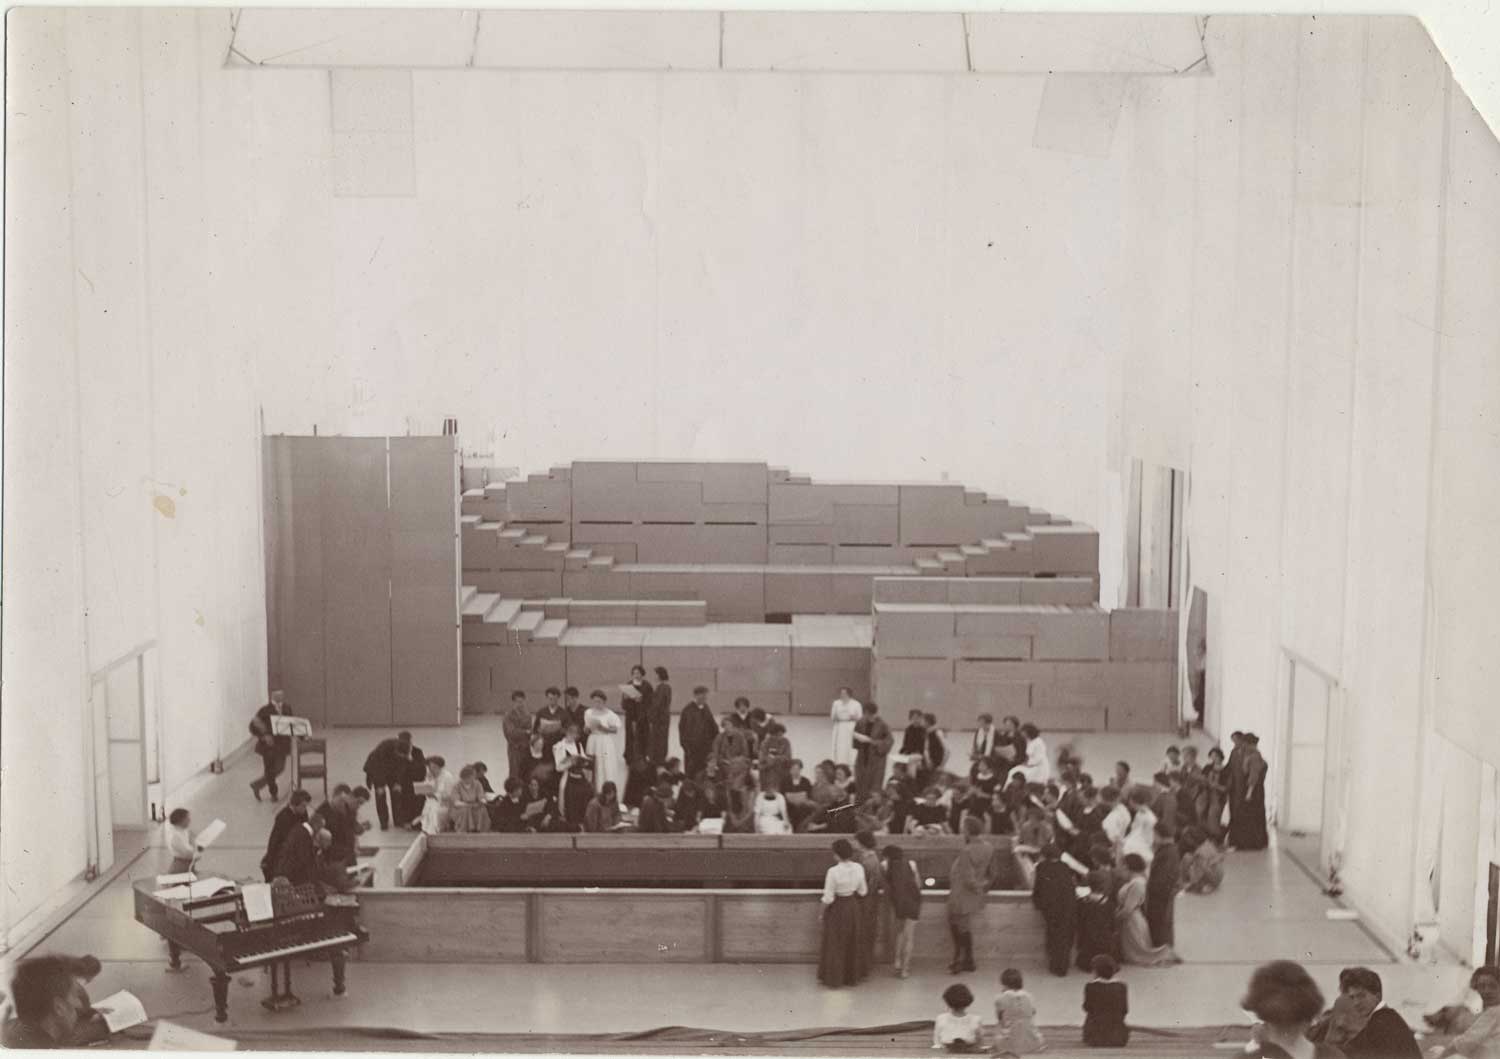 Foto, schwarz-weiß, innen: Ungefähr vierzig Personen stehen und sitzen in Grüppchen im Raum verteilt.